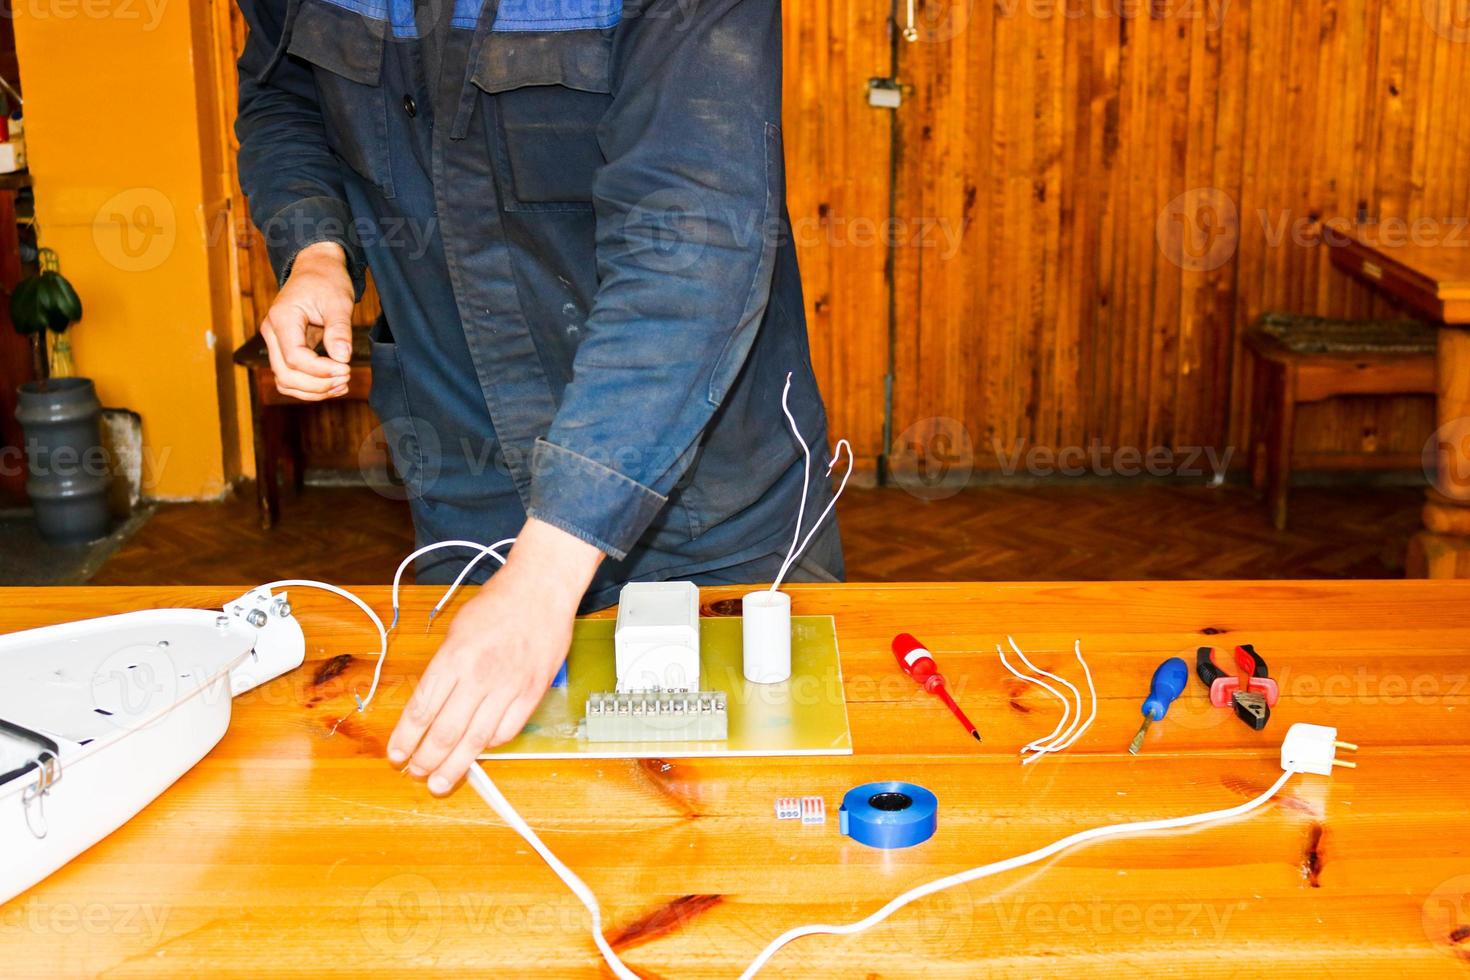 un homme travaillant électricien travaille, recueille le circuit électrique d'un grand réverbère blanc avec des fils, un relais dans une usine industrielle photo